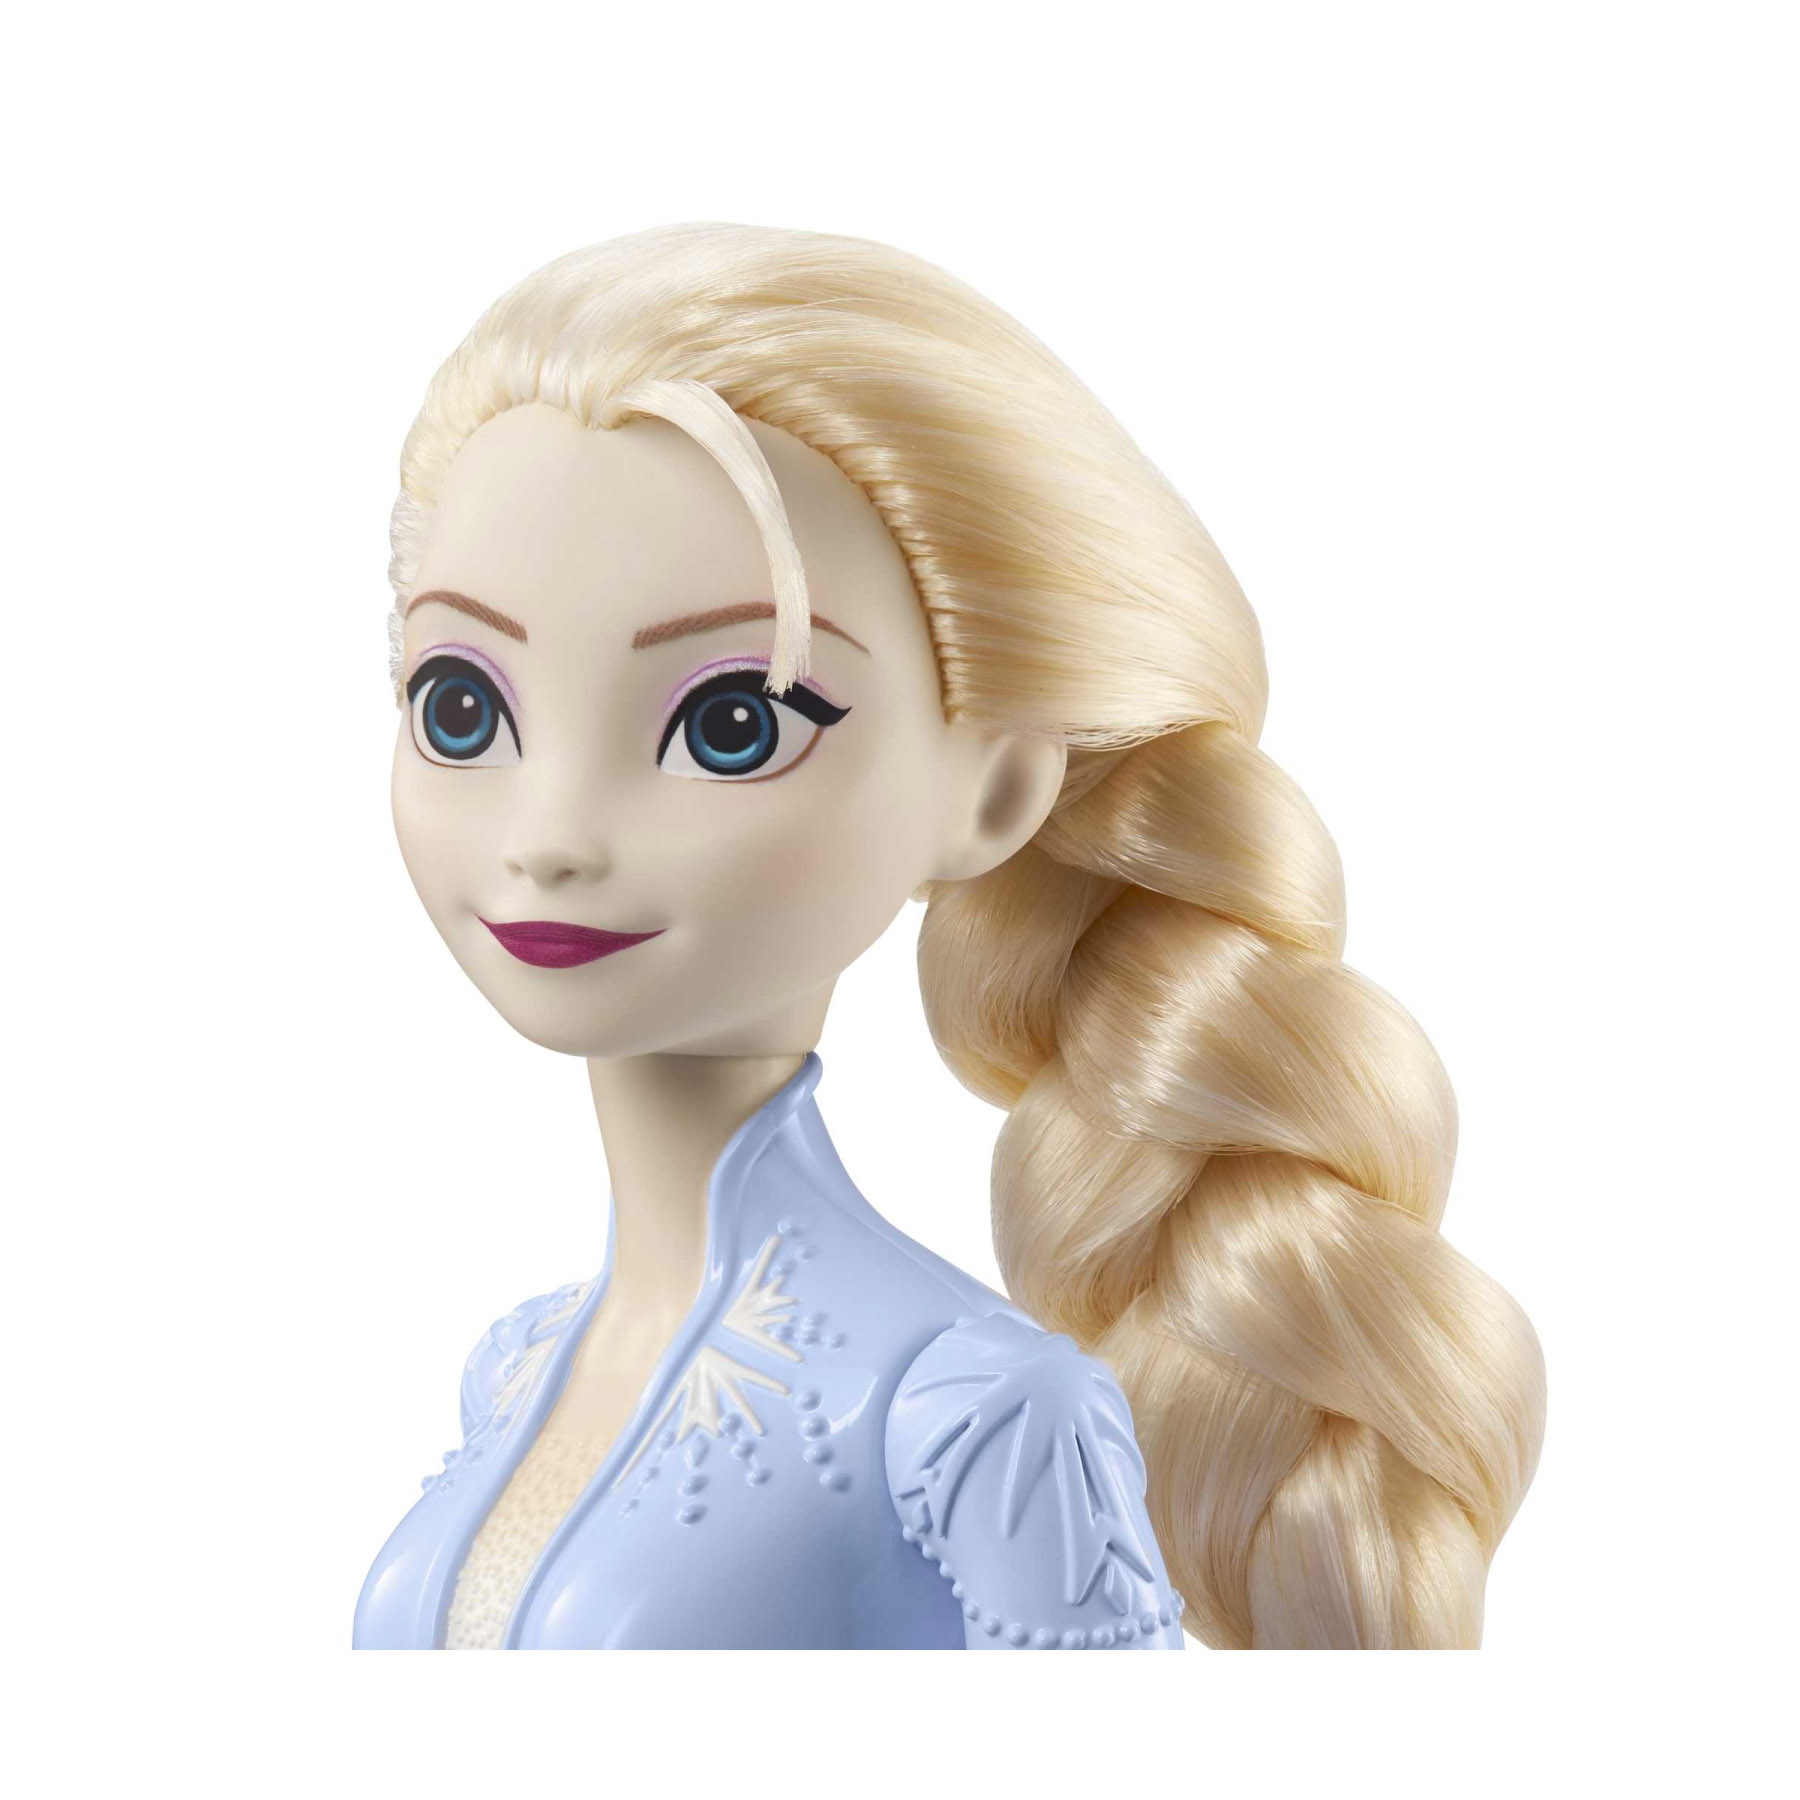 Elsa Bambola con abito esclusivo e accessori ispirati al film Disney Frozen II, HLW48 - Disney